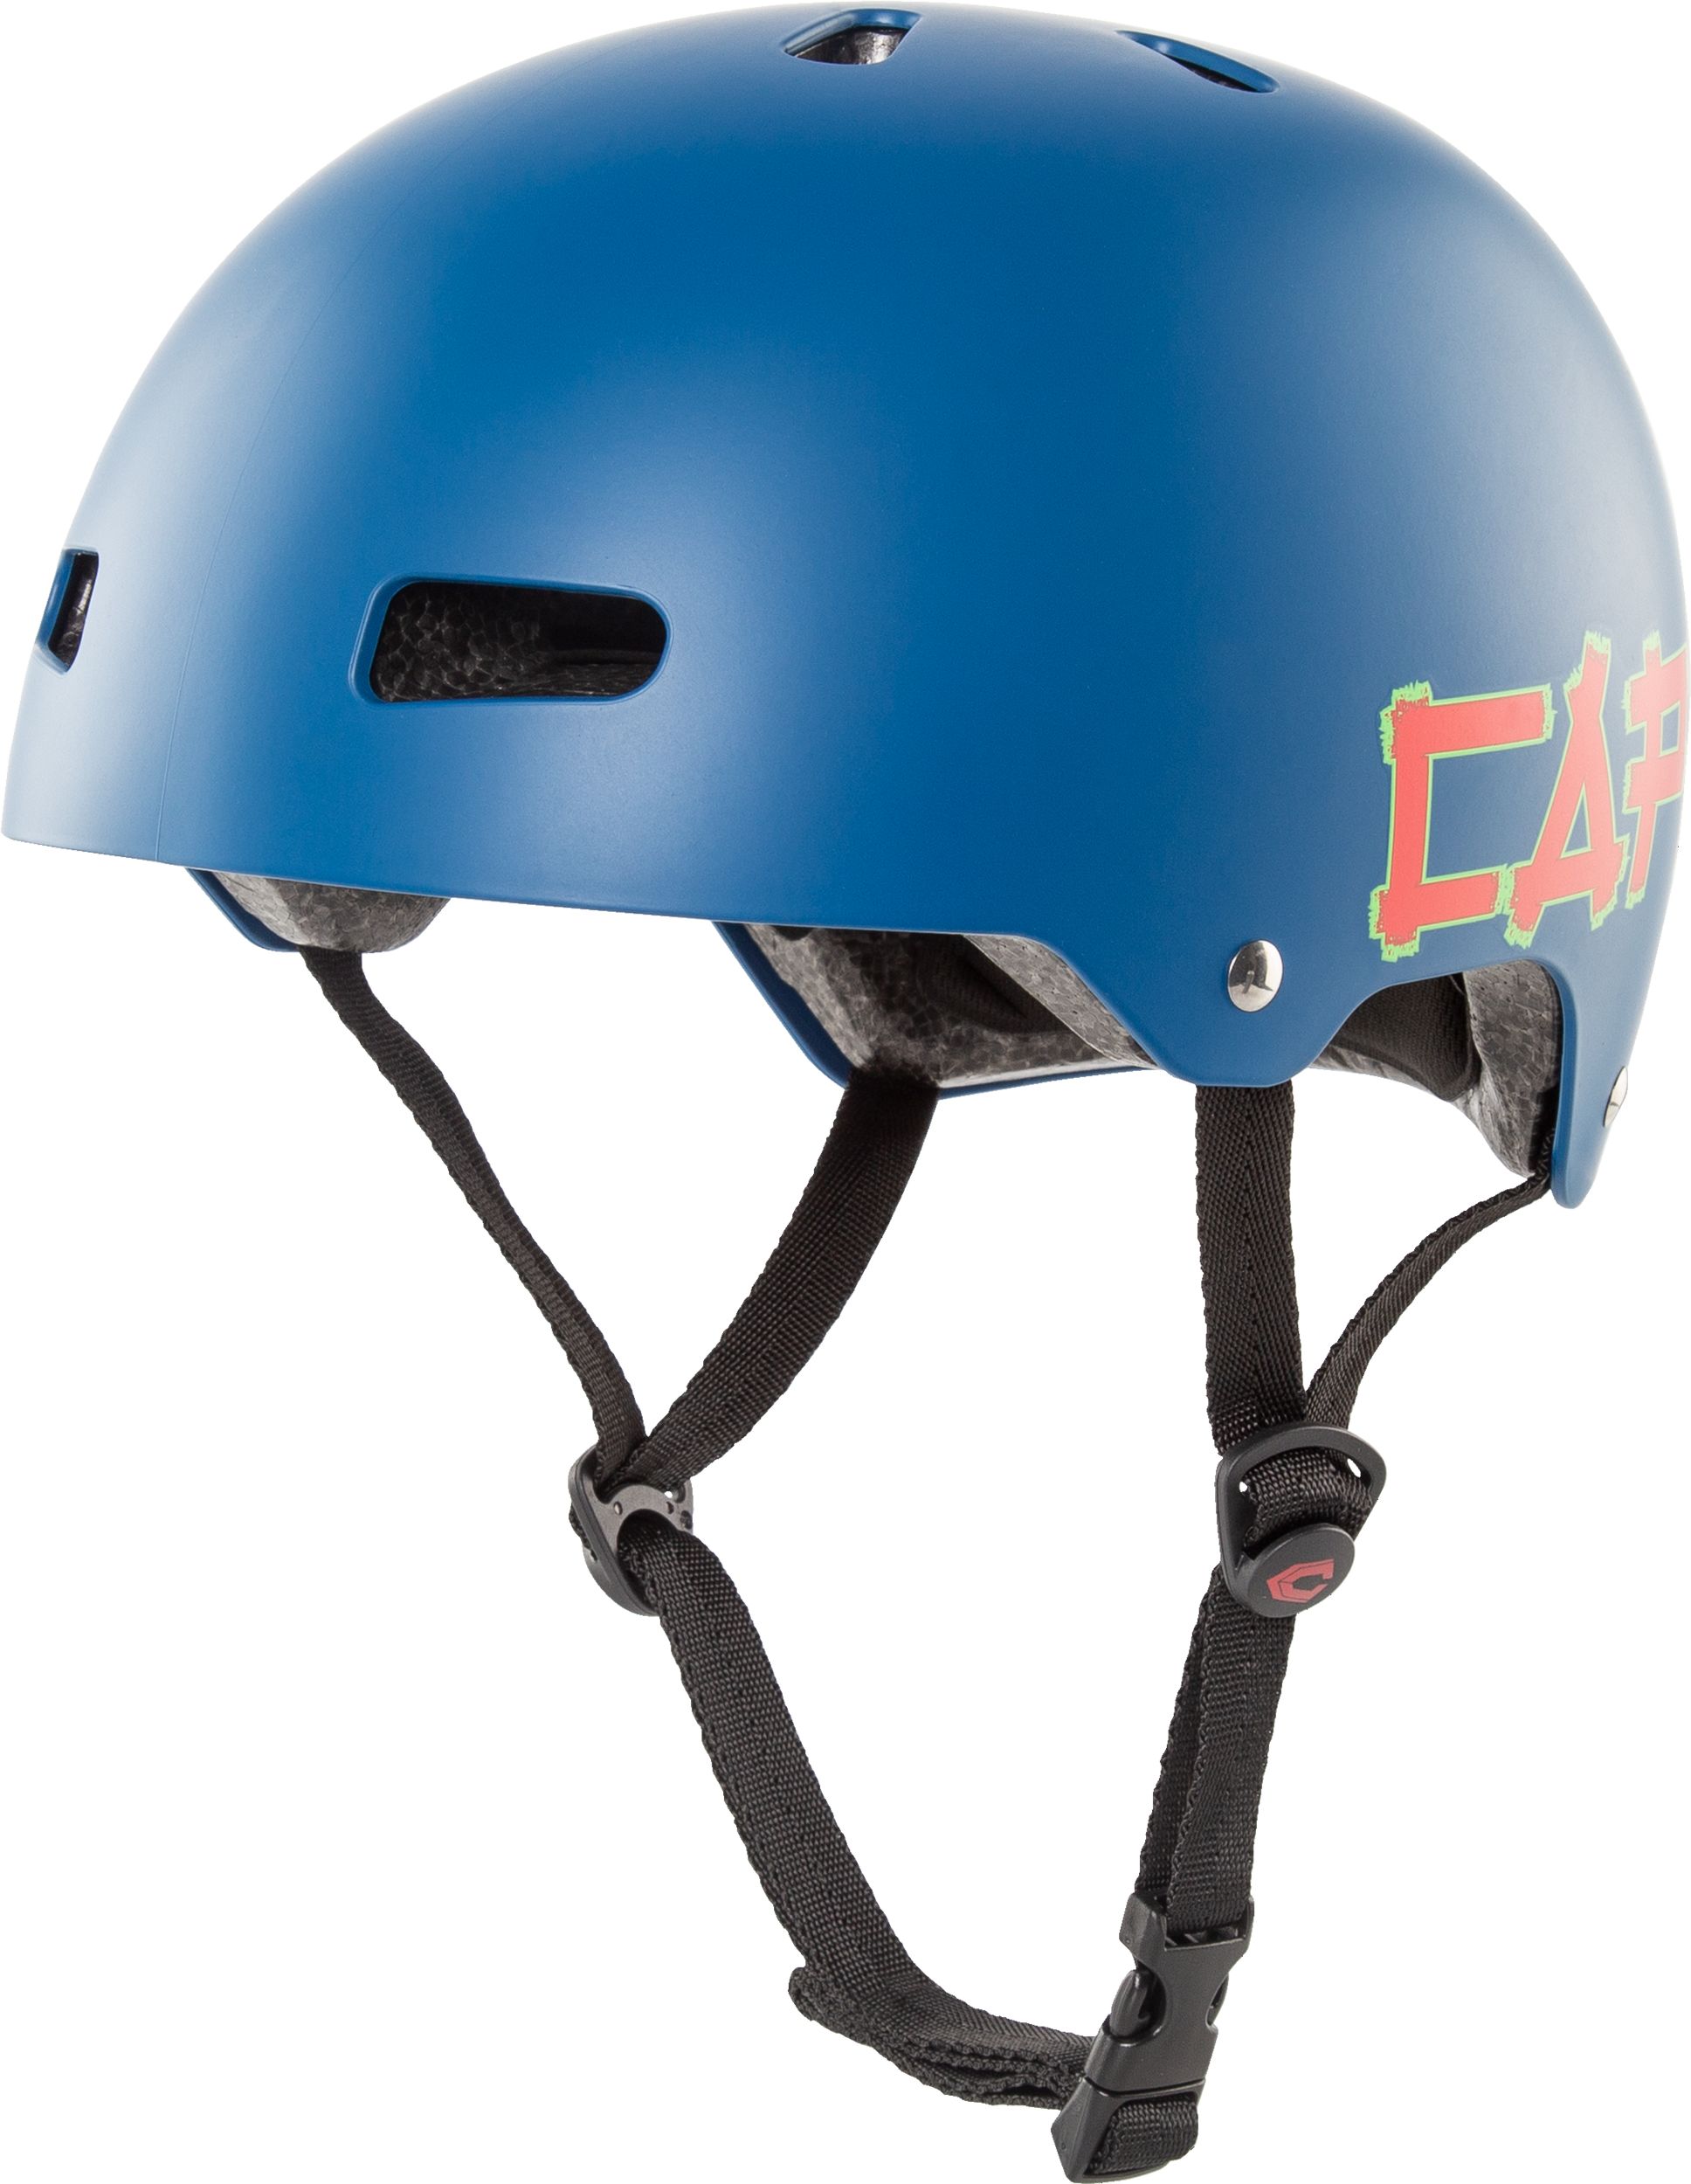 Capix Bucket Junior Bike Helmet